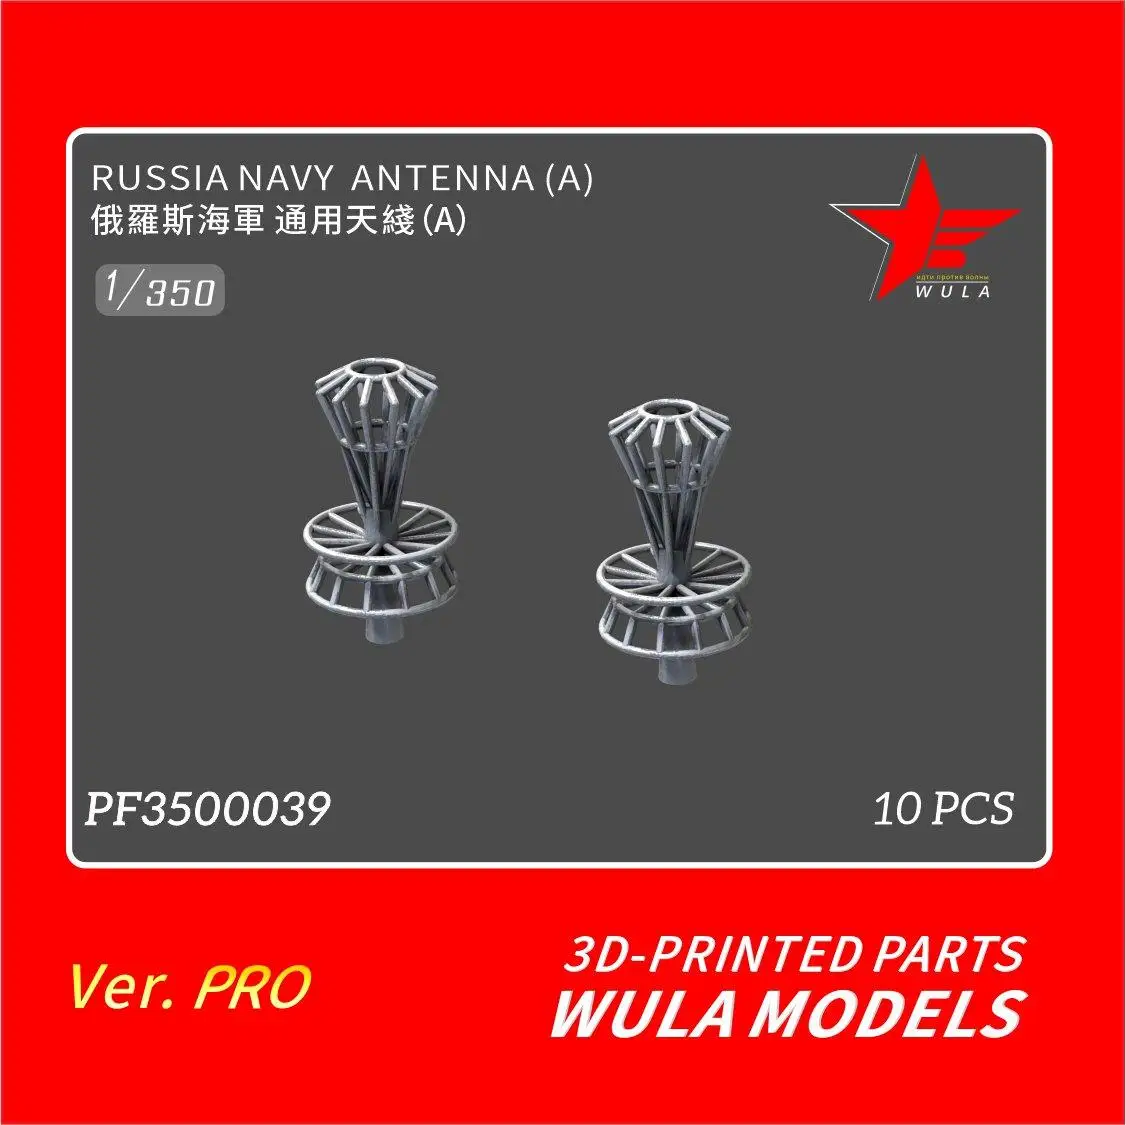 

WULA models PF3500039 1/350 RUSSIA NAVY ANTENNA(A) 3D-PRINTED PARTS